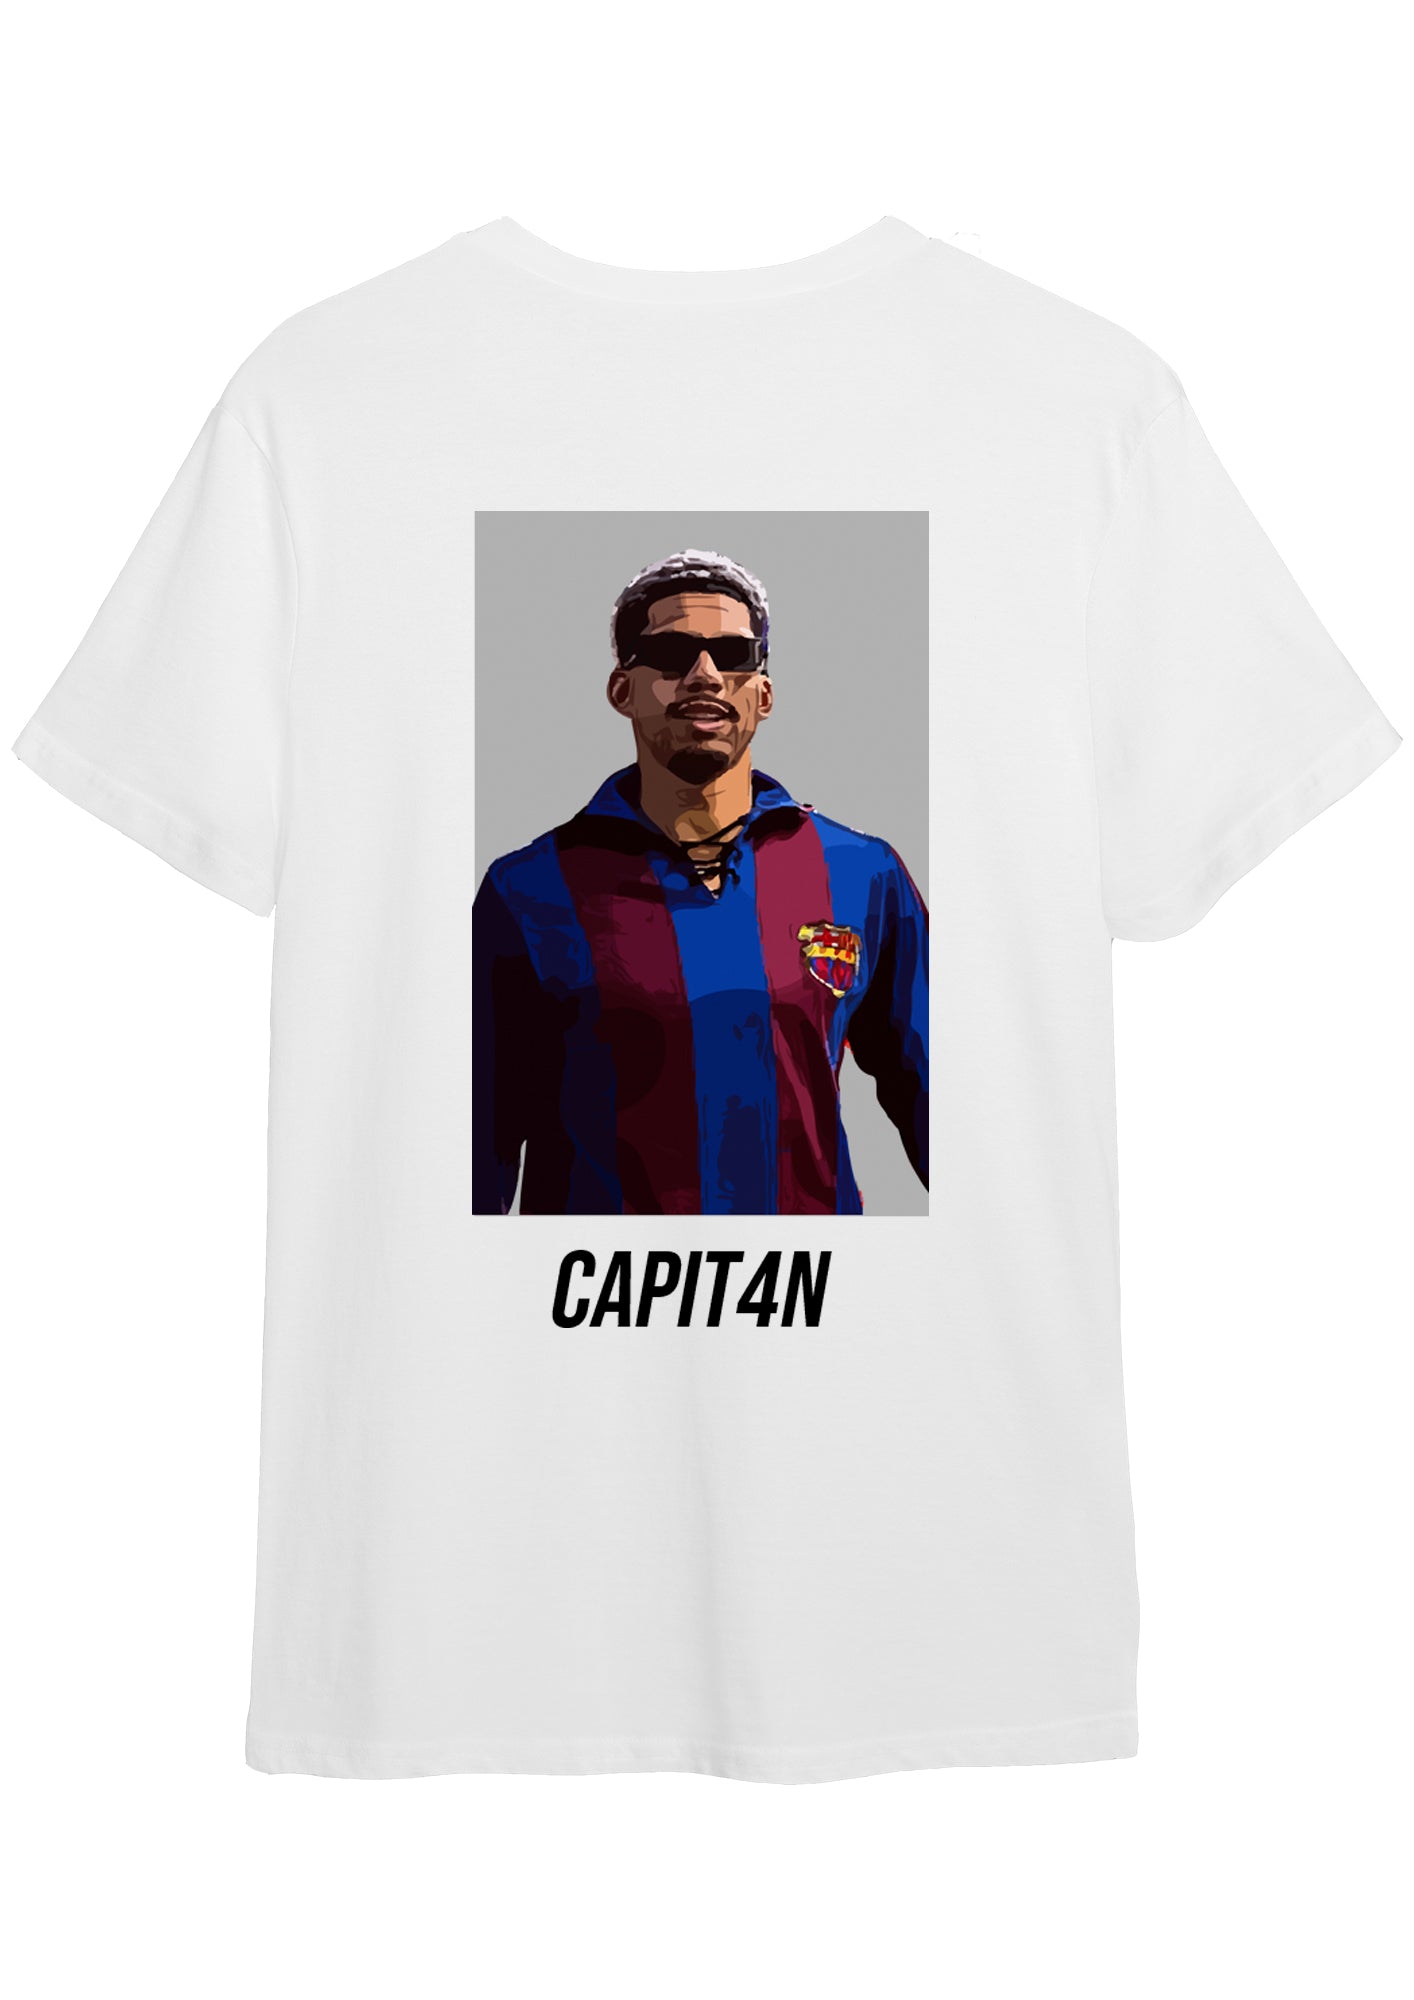 Camiseta "C4PITAN" de Ronald Araujo